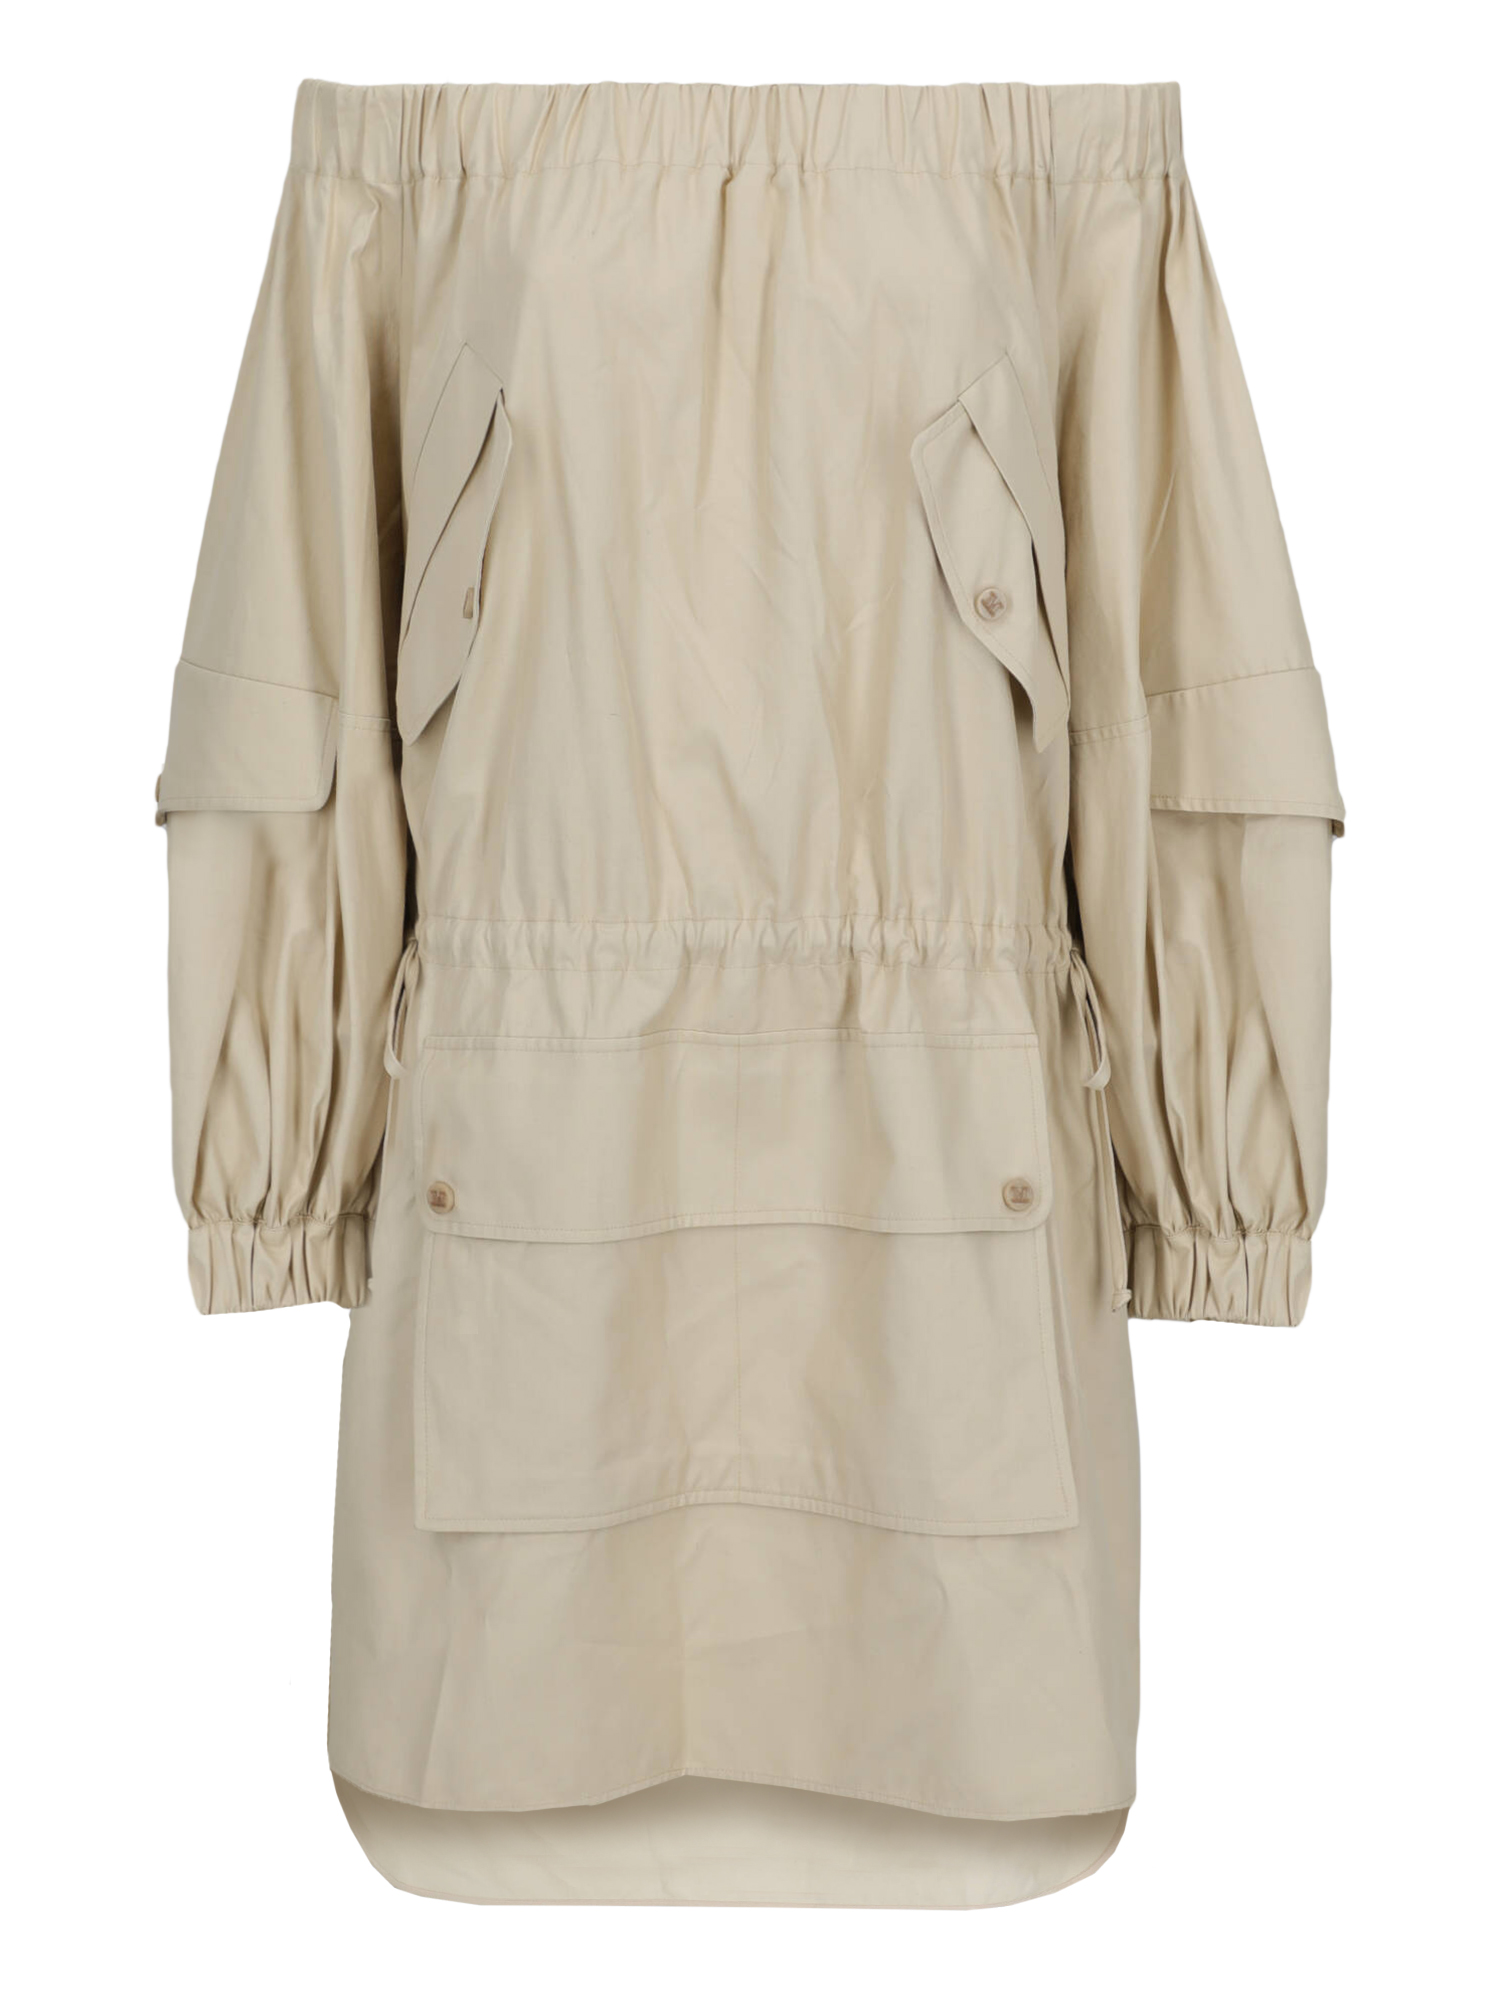 Robes Pour Femme - Maxmara - En Cotton Beige - Taille:  -